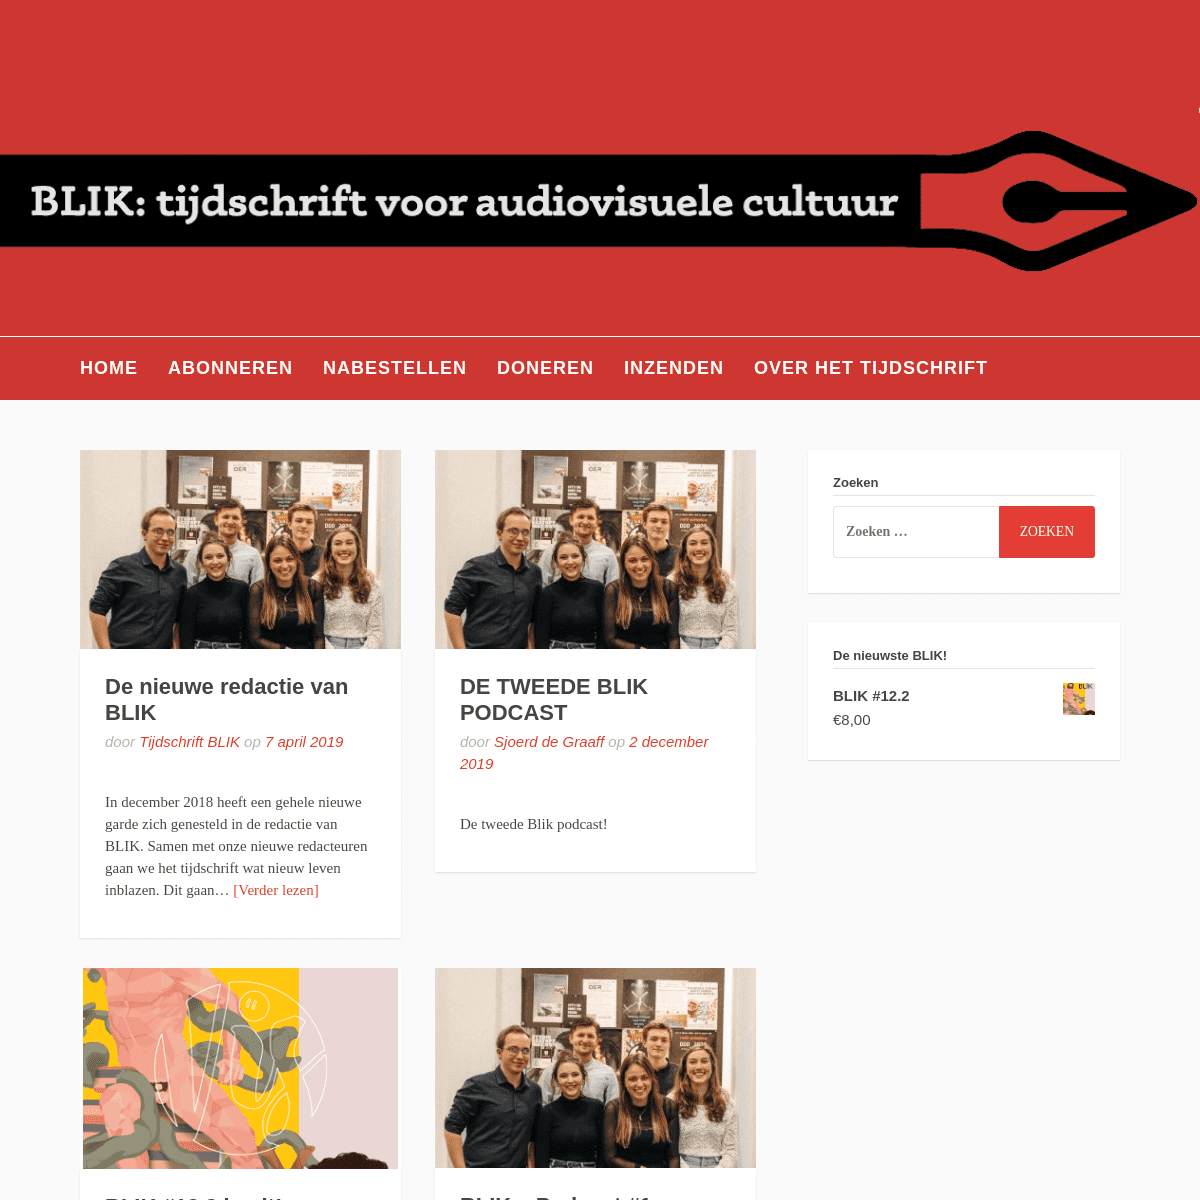 A complete backup of blikonline.nl